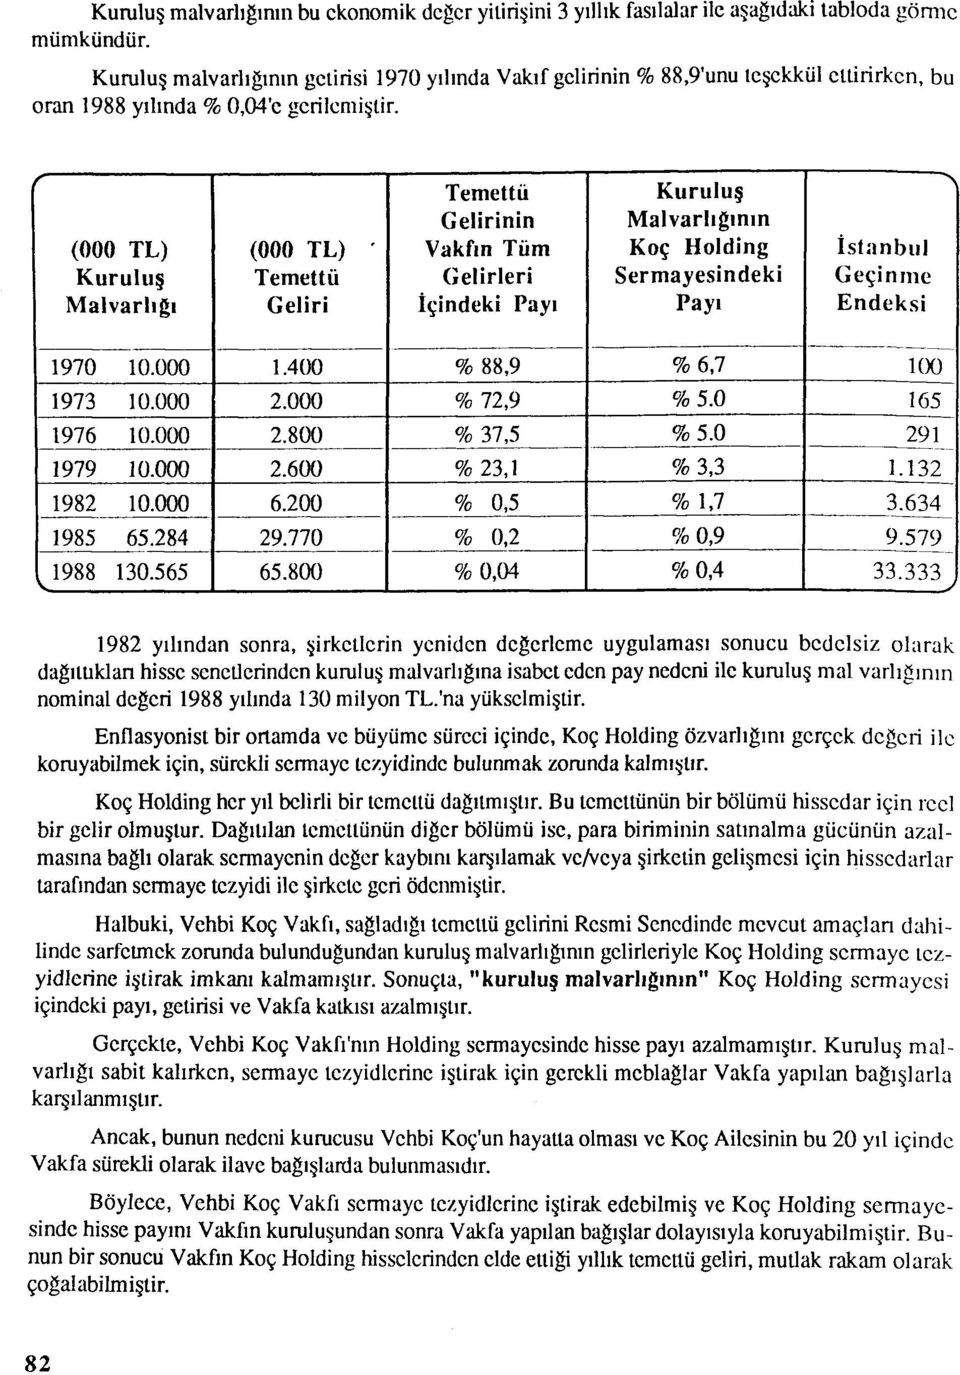 Temettü Kuruluş Gelirinin Malvarlığının (000 TL) Kuruluş Malvarlığı (000 TL) Temettü Geliri Vakfın Tüm Gelirleri İçindeki Payı Koç Holding Sermayesindeki Payı İstanbul Geçinme Endeksi 1970 10.000 1.